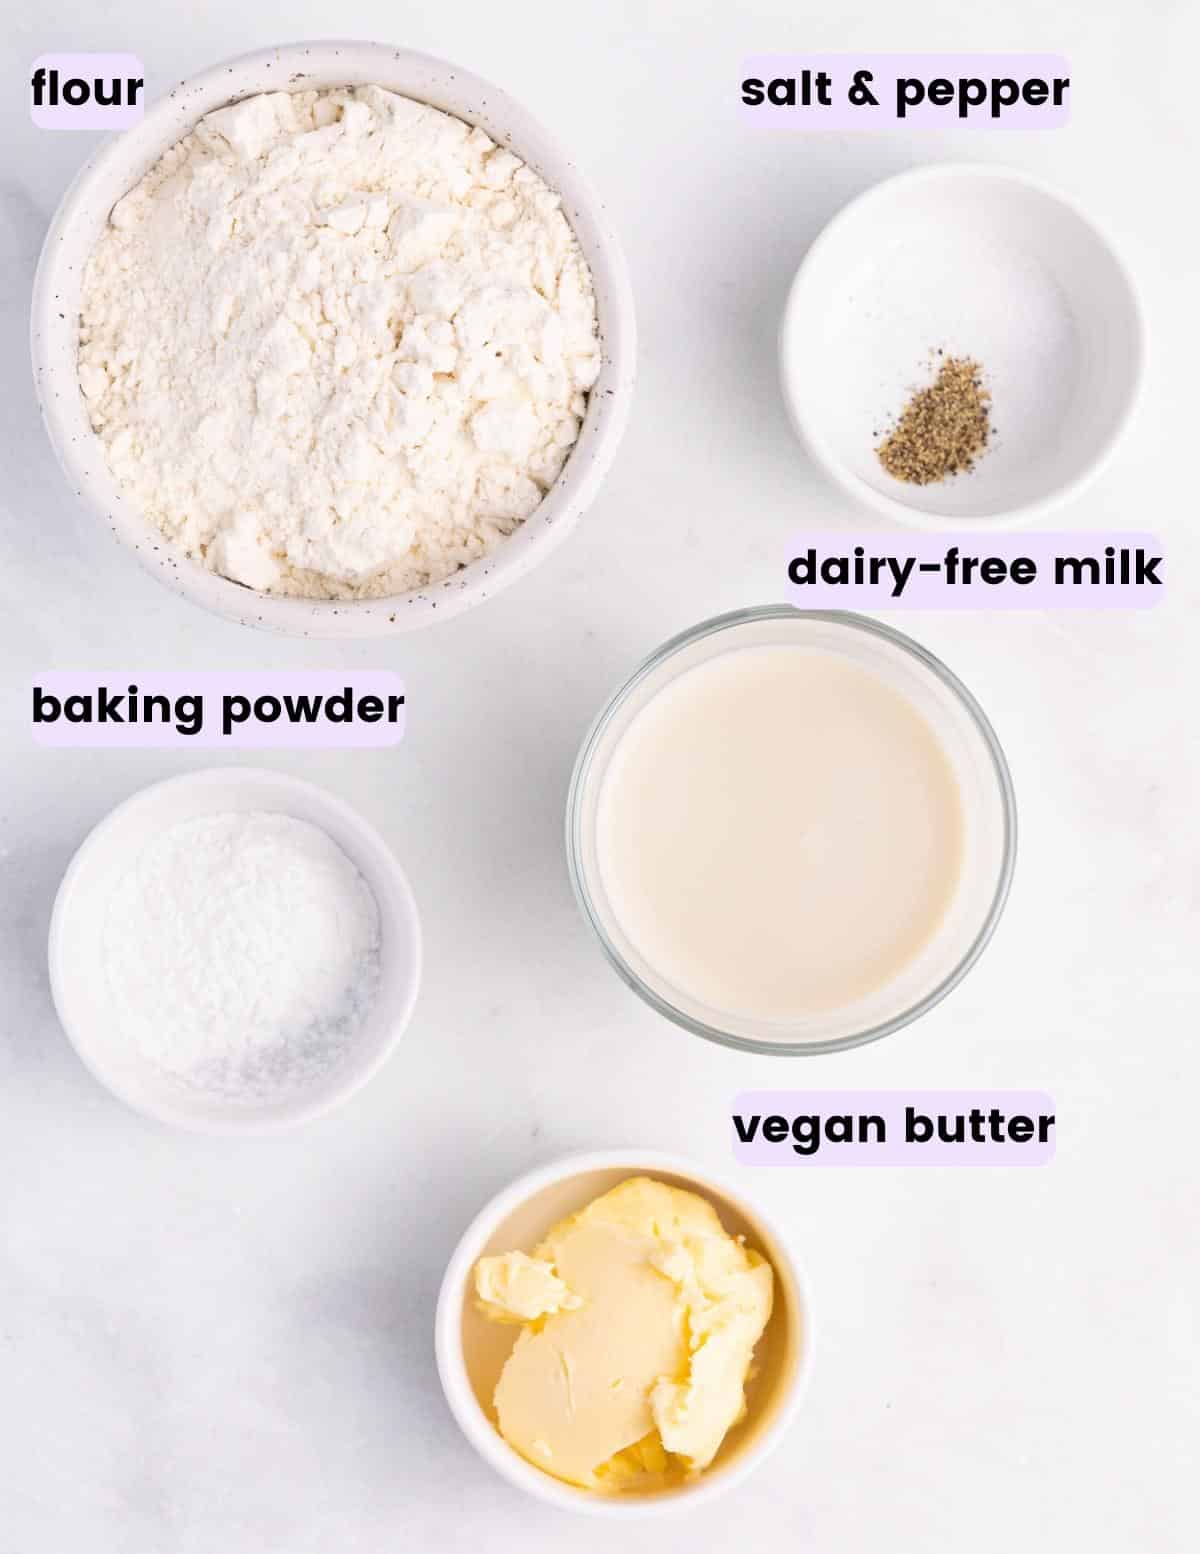 flour, salt, pepper, baking powder, dairy-free milk, vegan butter